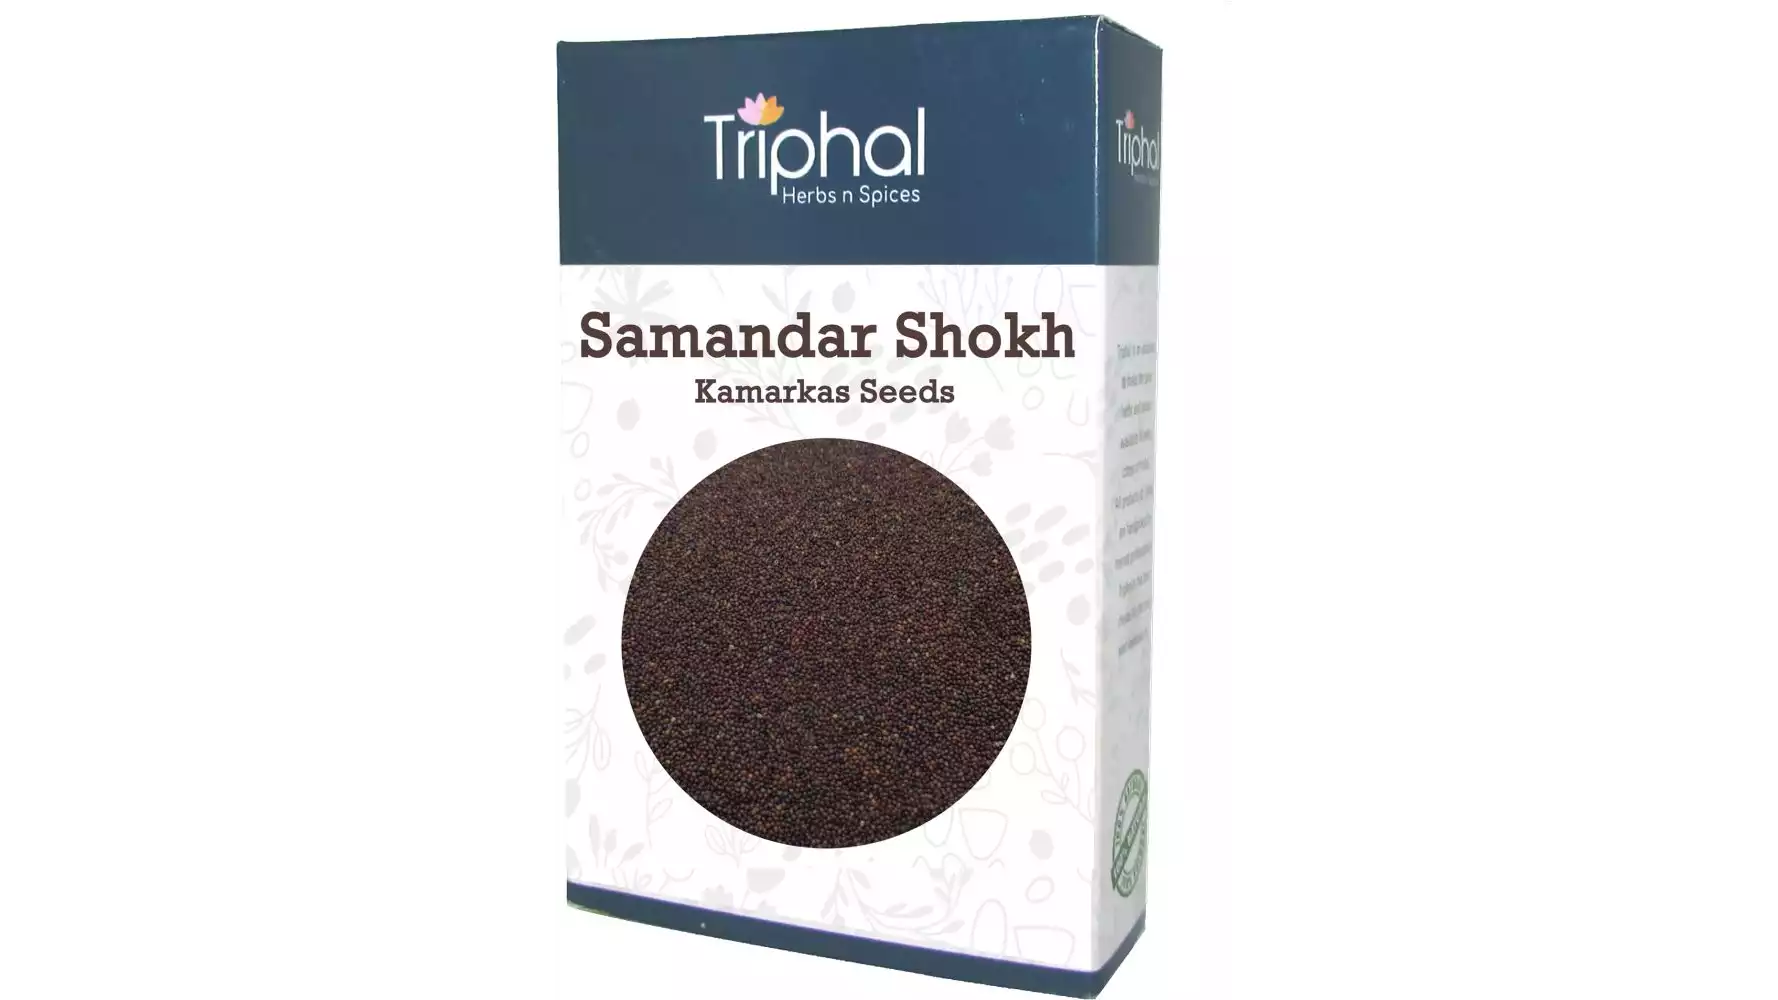 Triphal Samandar Shokh Kamarkas Seeds (400g)